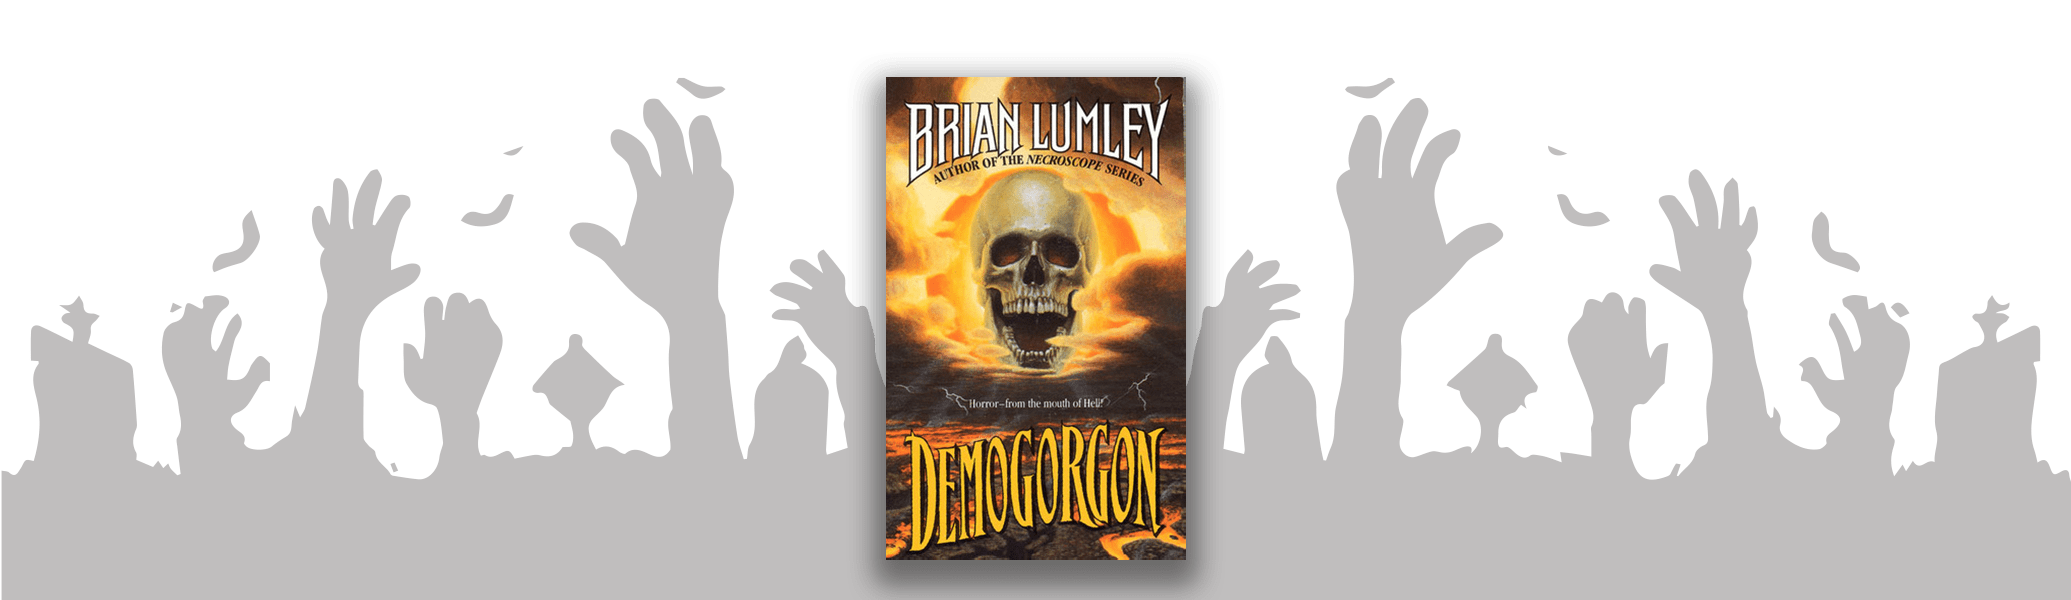 Demogorgon by Brian Lumley